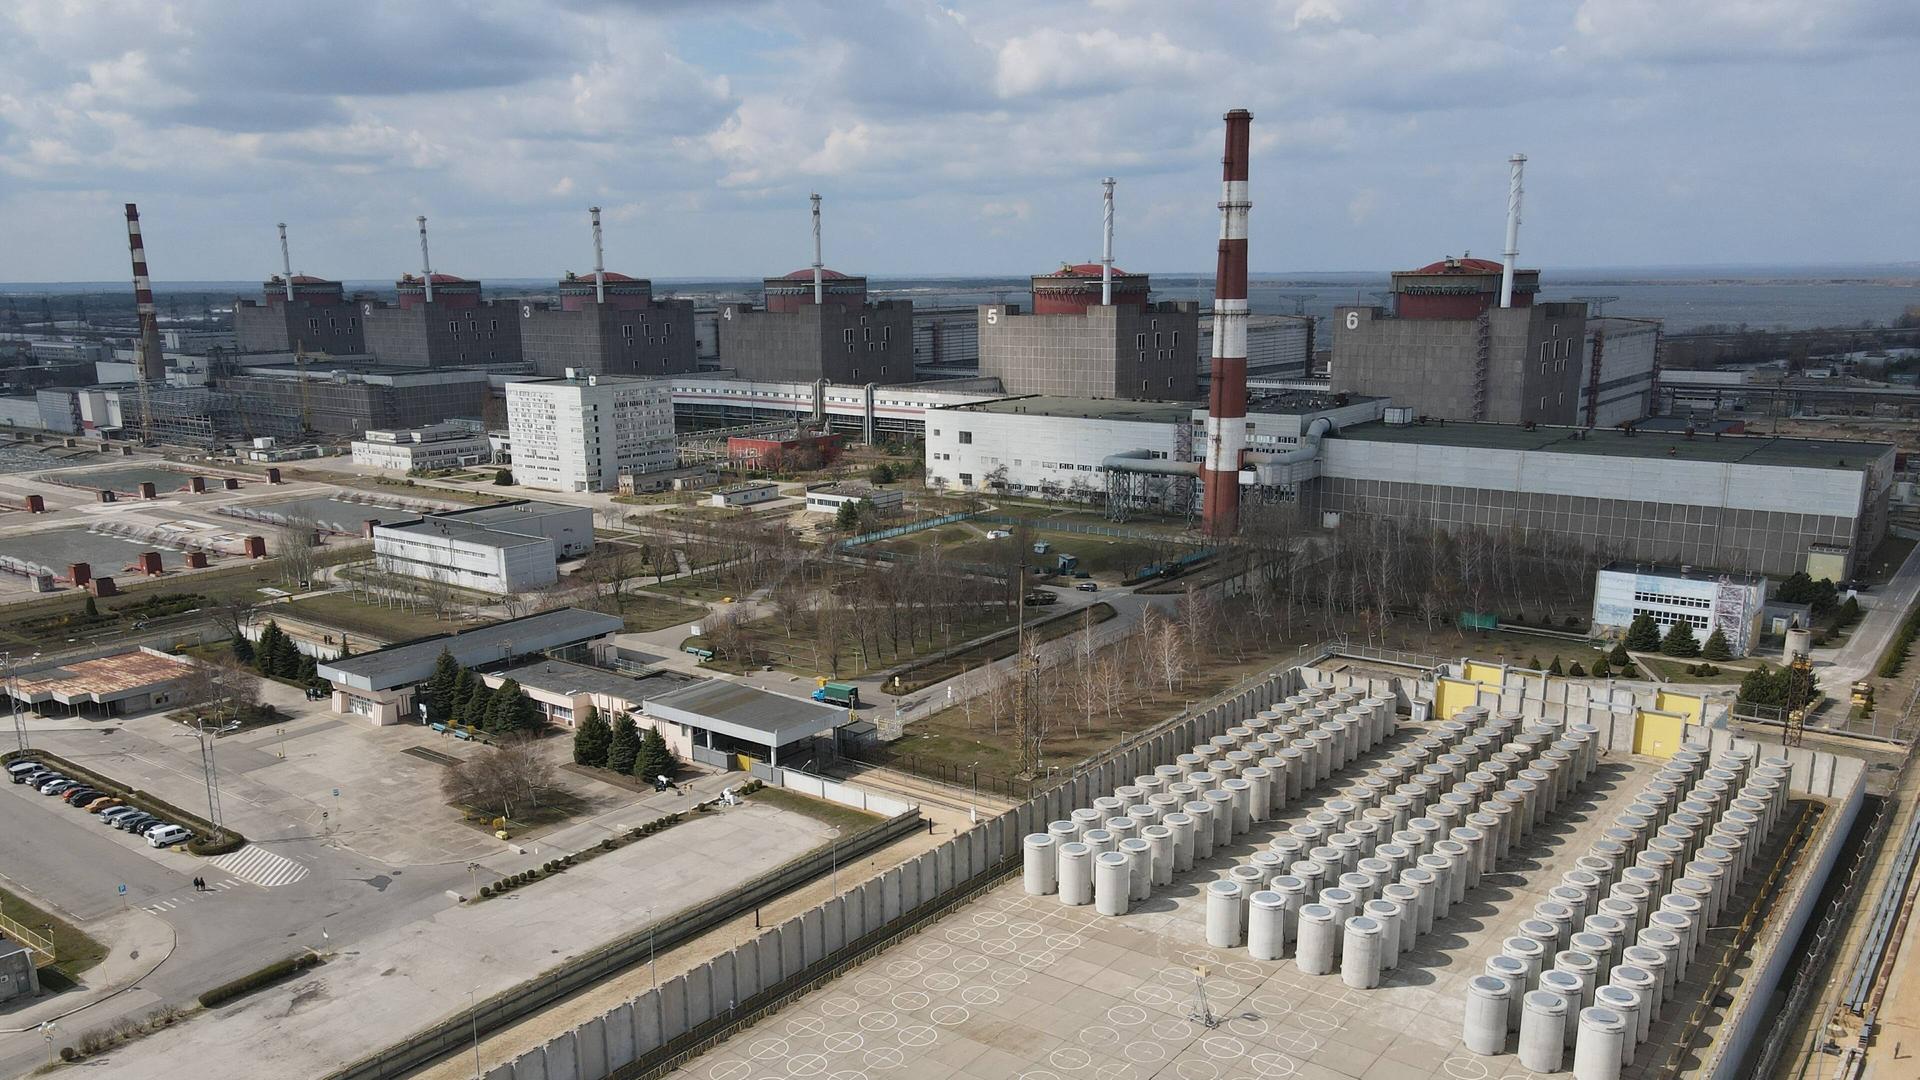 Russisch besetztes AKW - Bundesamt für Strahlenschutz hat keine Hinweise auf freigesetzte Radioaktivität in Saporischschja